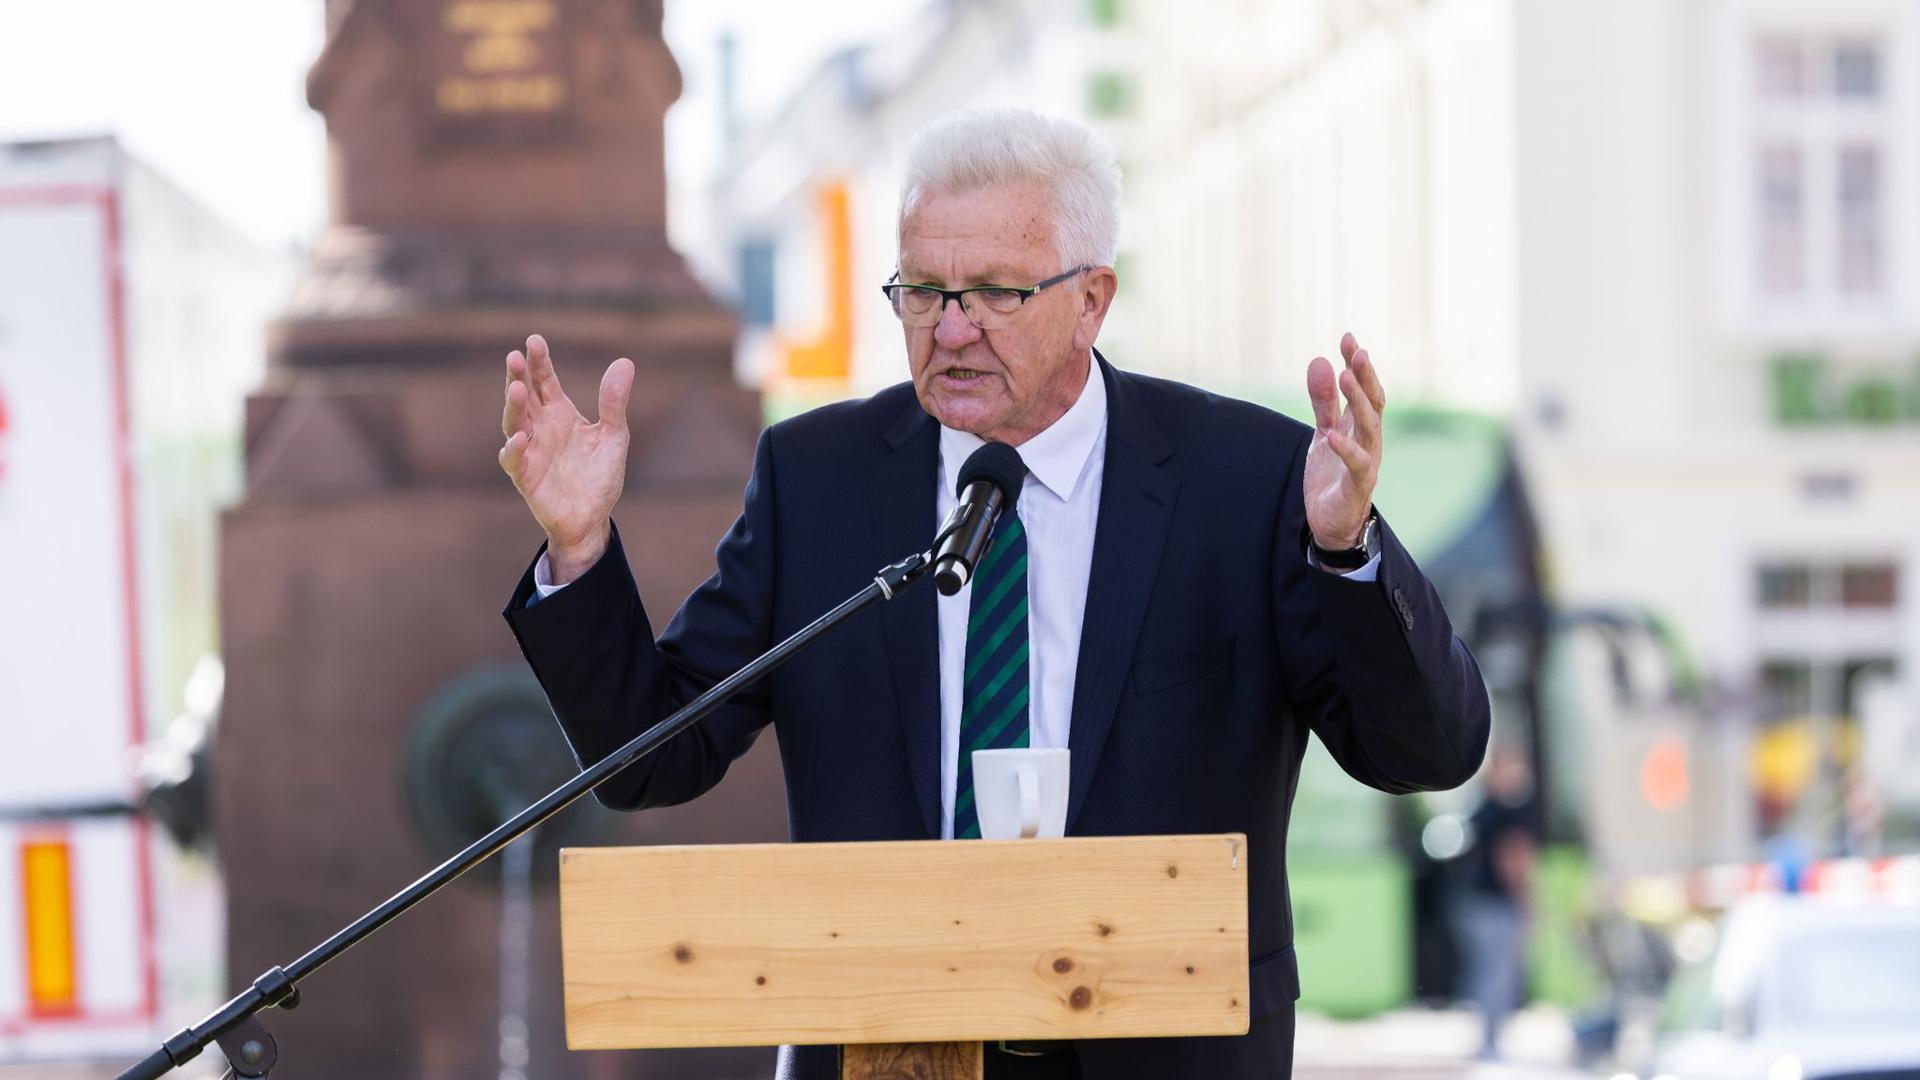 Baden-Württembergs Ministerpräsident Winfried Kretschmann (Grüne) spricht bei einer Wahlkampfveranstaltung.